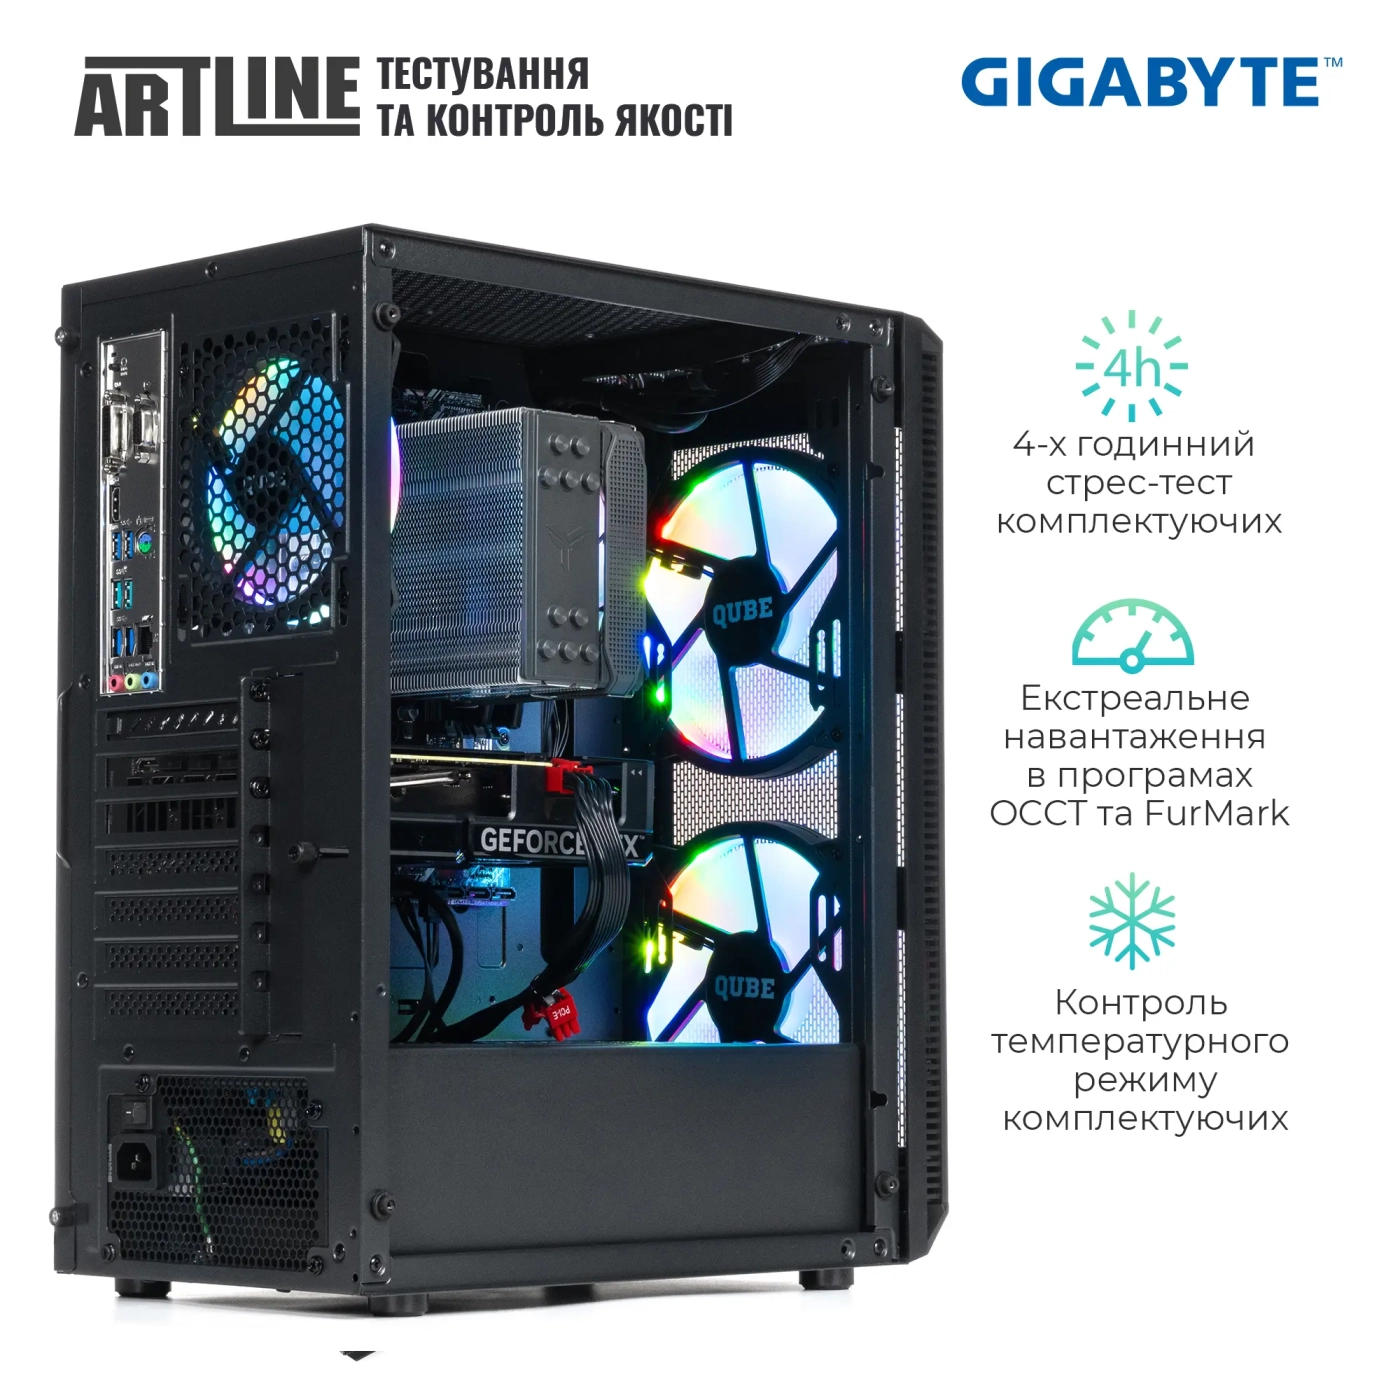 Купить Компьютер ARTLINE Gaming X81v30GGB GIGABYTE Special Edition (X81v30GGB) - фото 8